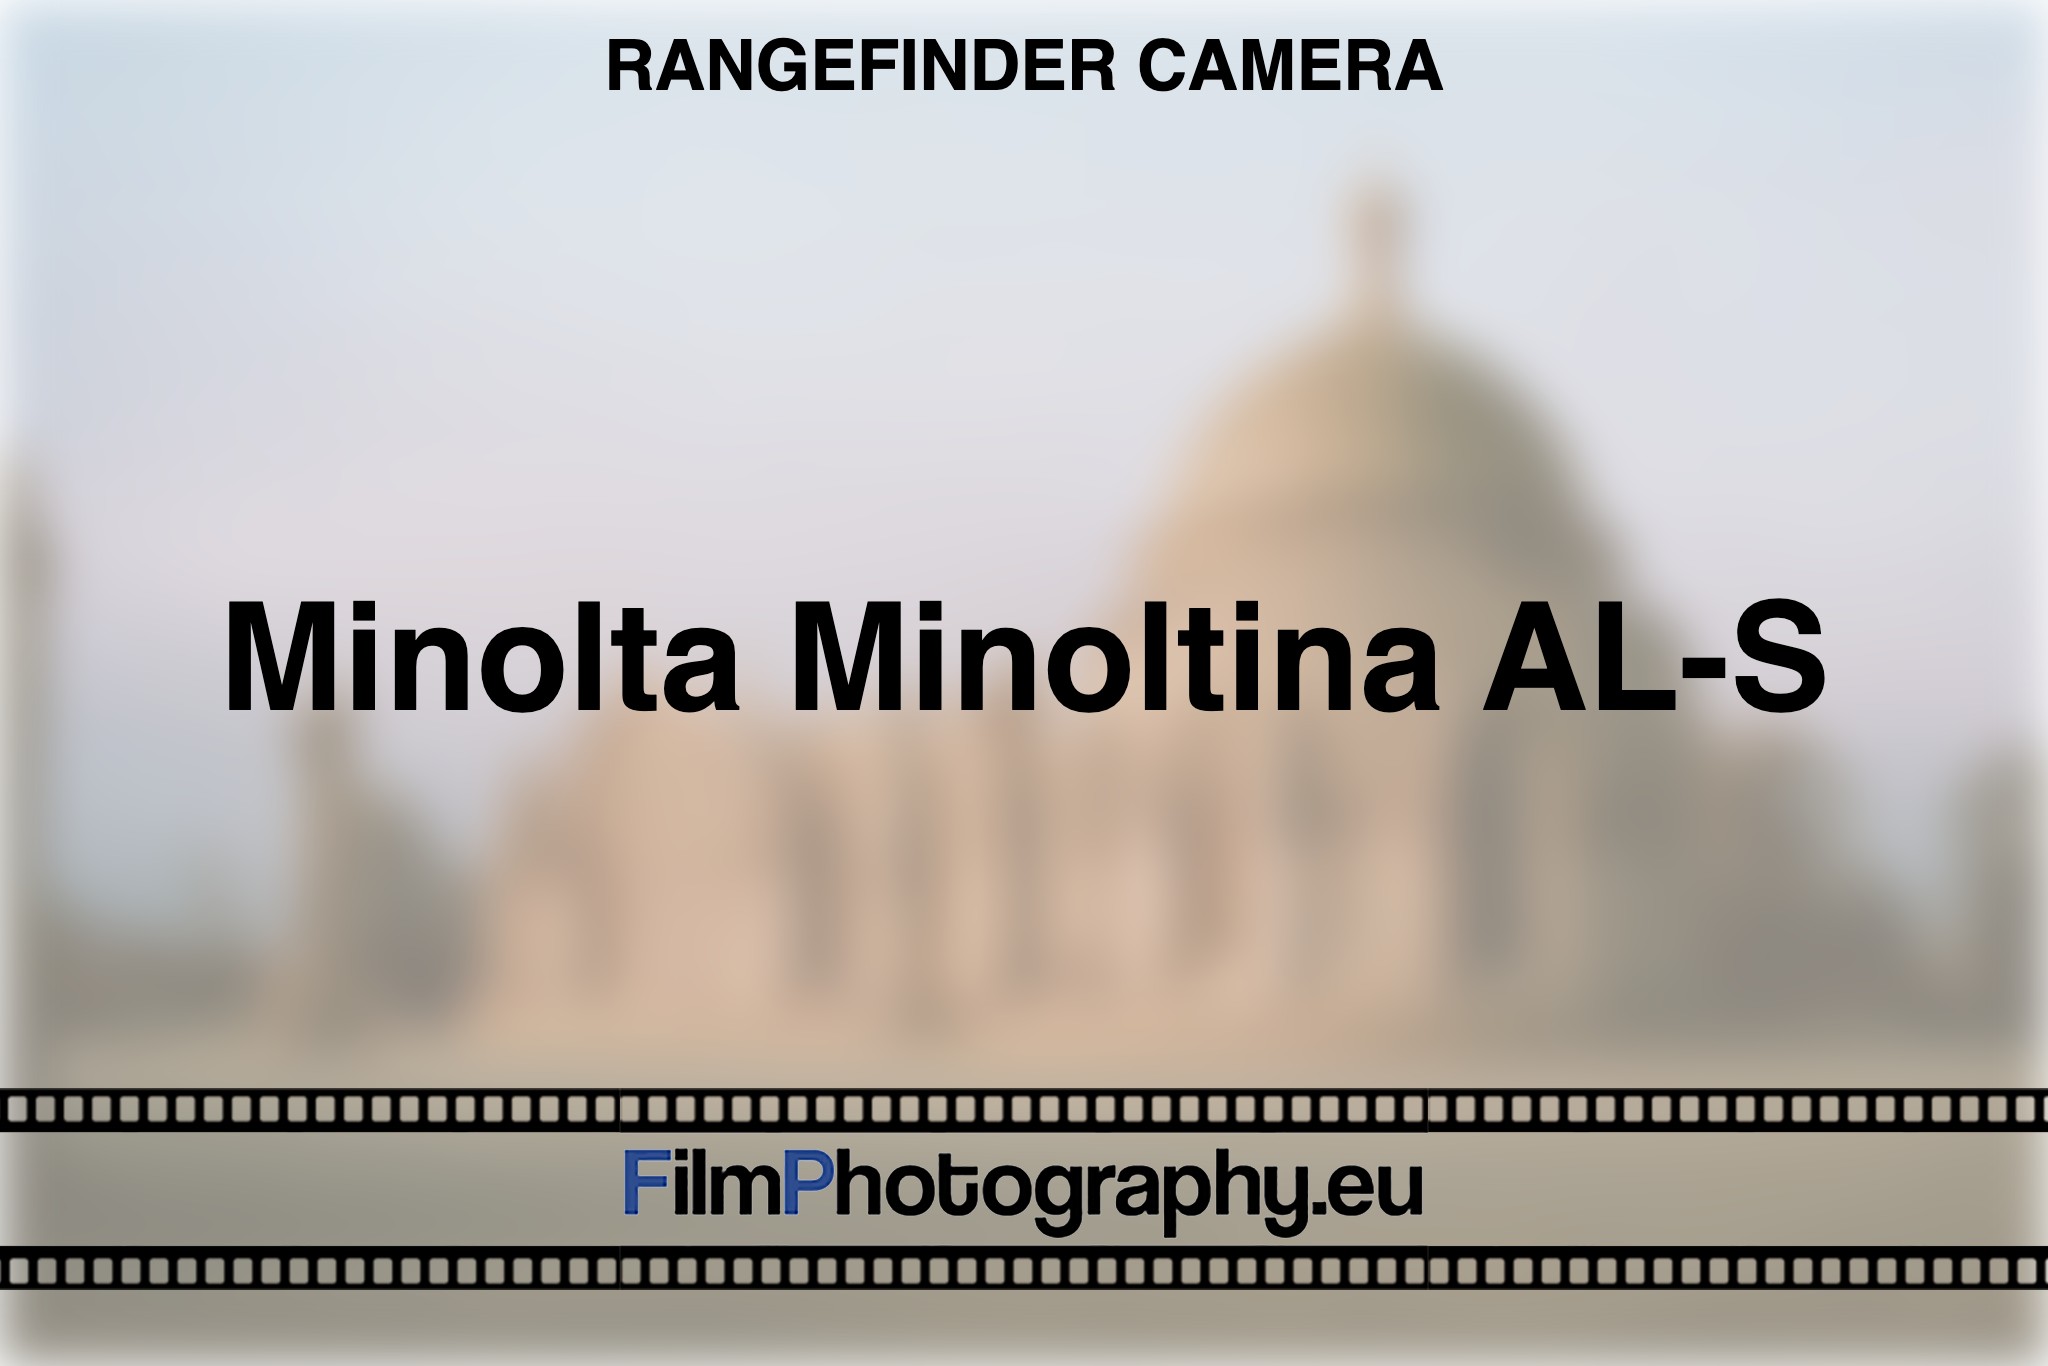 minolta-minoltina-al-s-rangefinder-camera-bnv